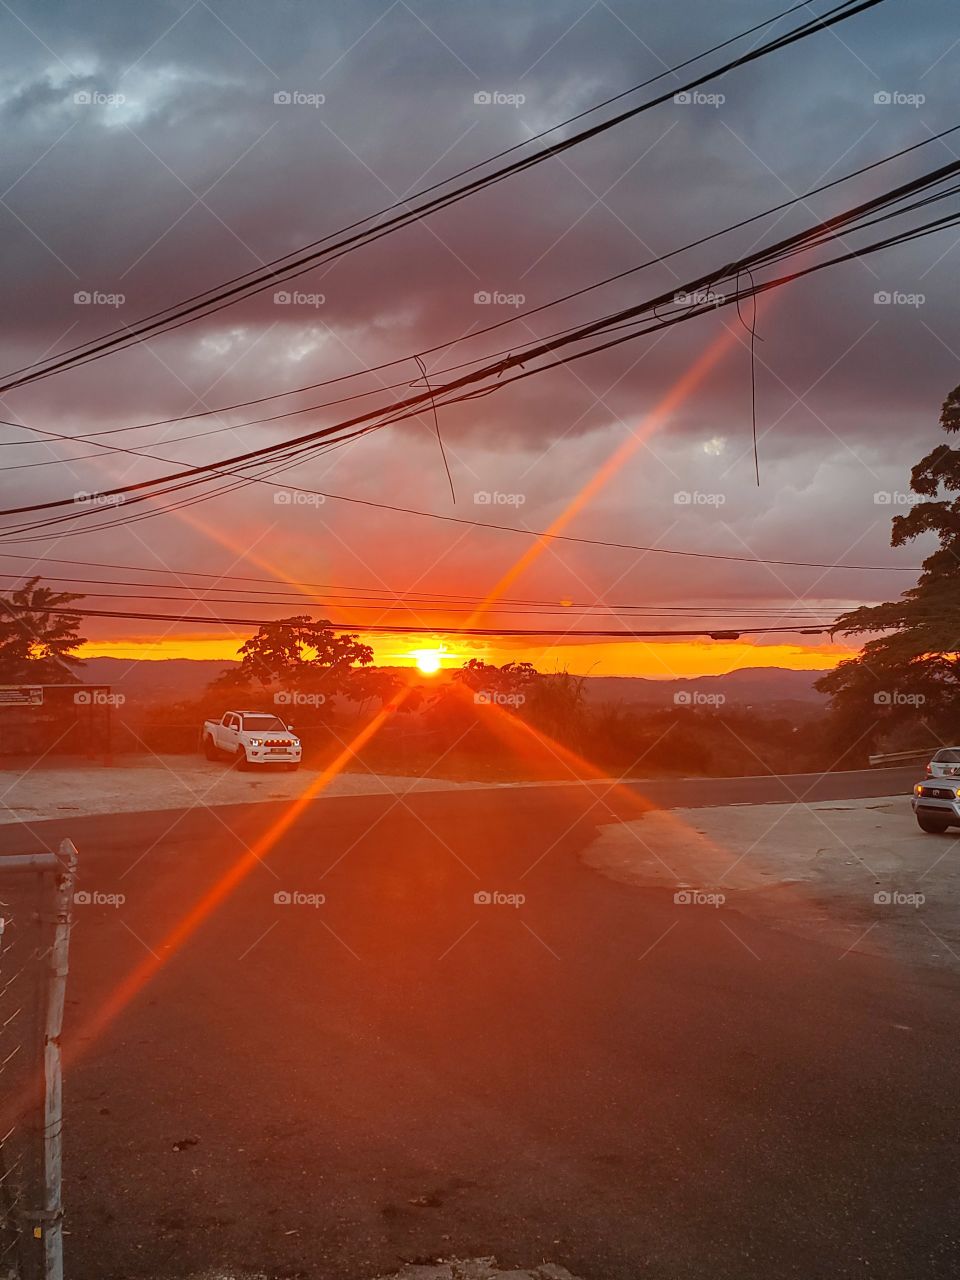 amazing sunset